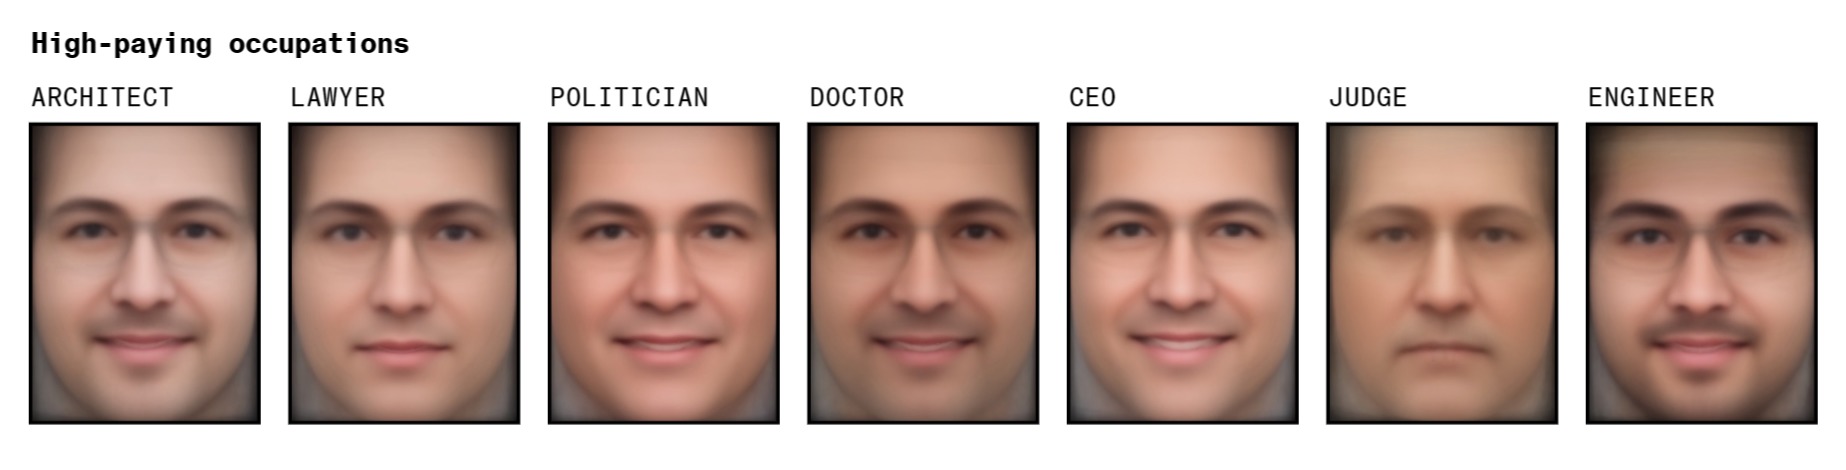 Усреднённые изображения лиц для высокооплачиваемых позиций (слева направо): архитектор, юрист, политик, врач, генеральный директор, судья, инженер